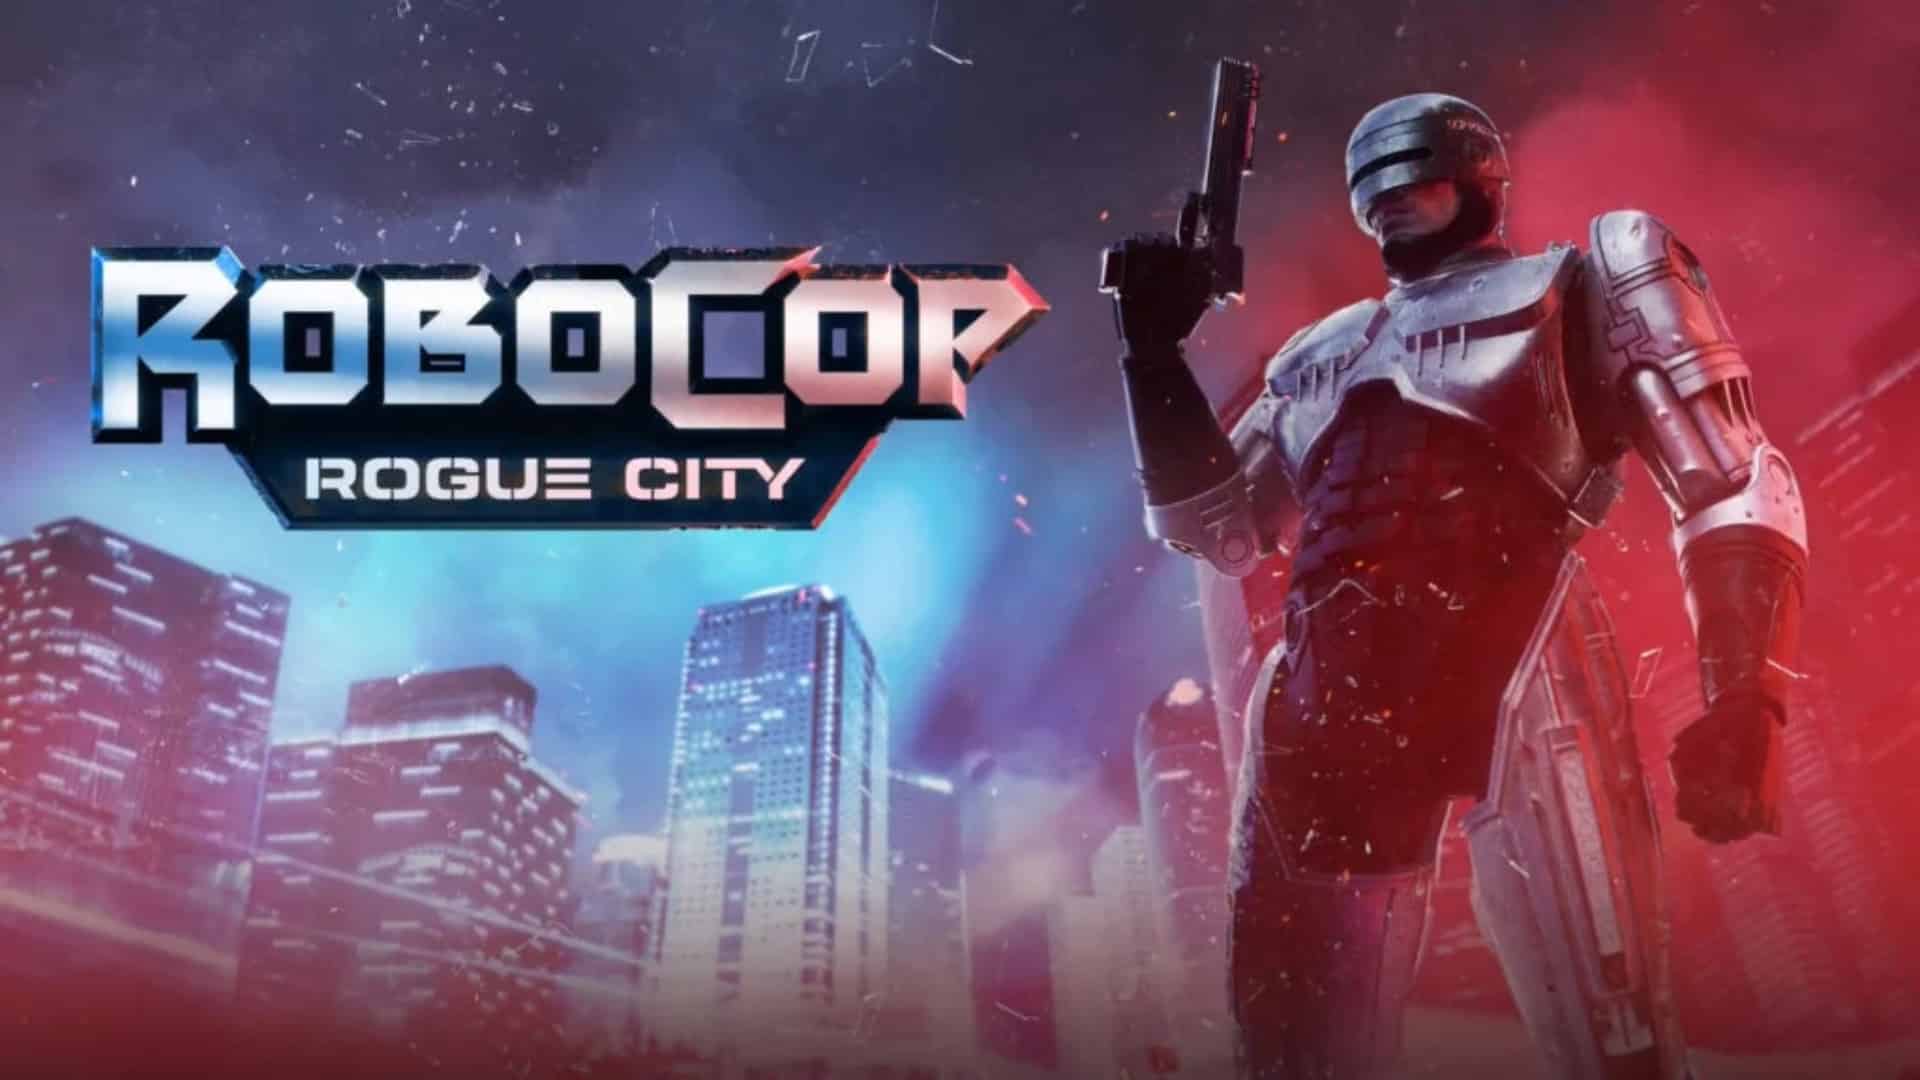 RoboCop: Rogue City for ios instal